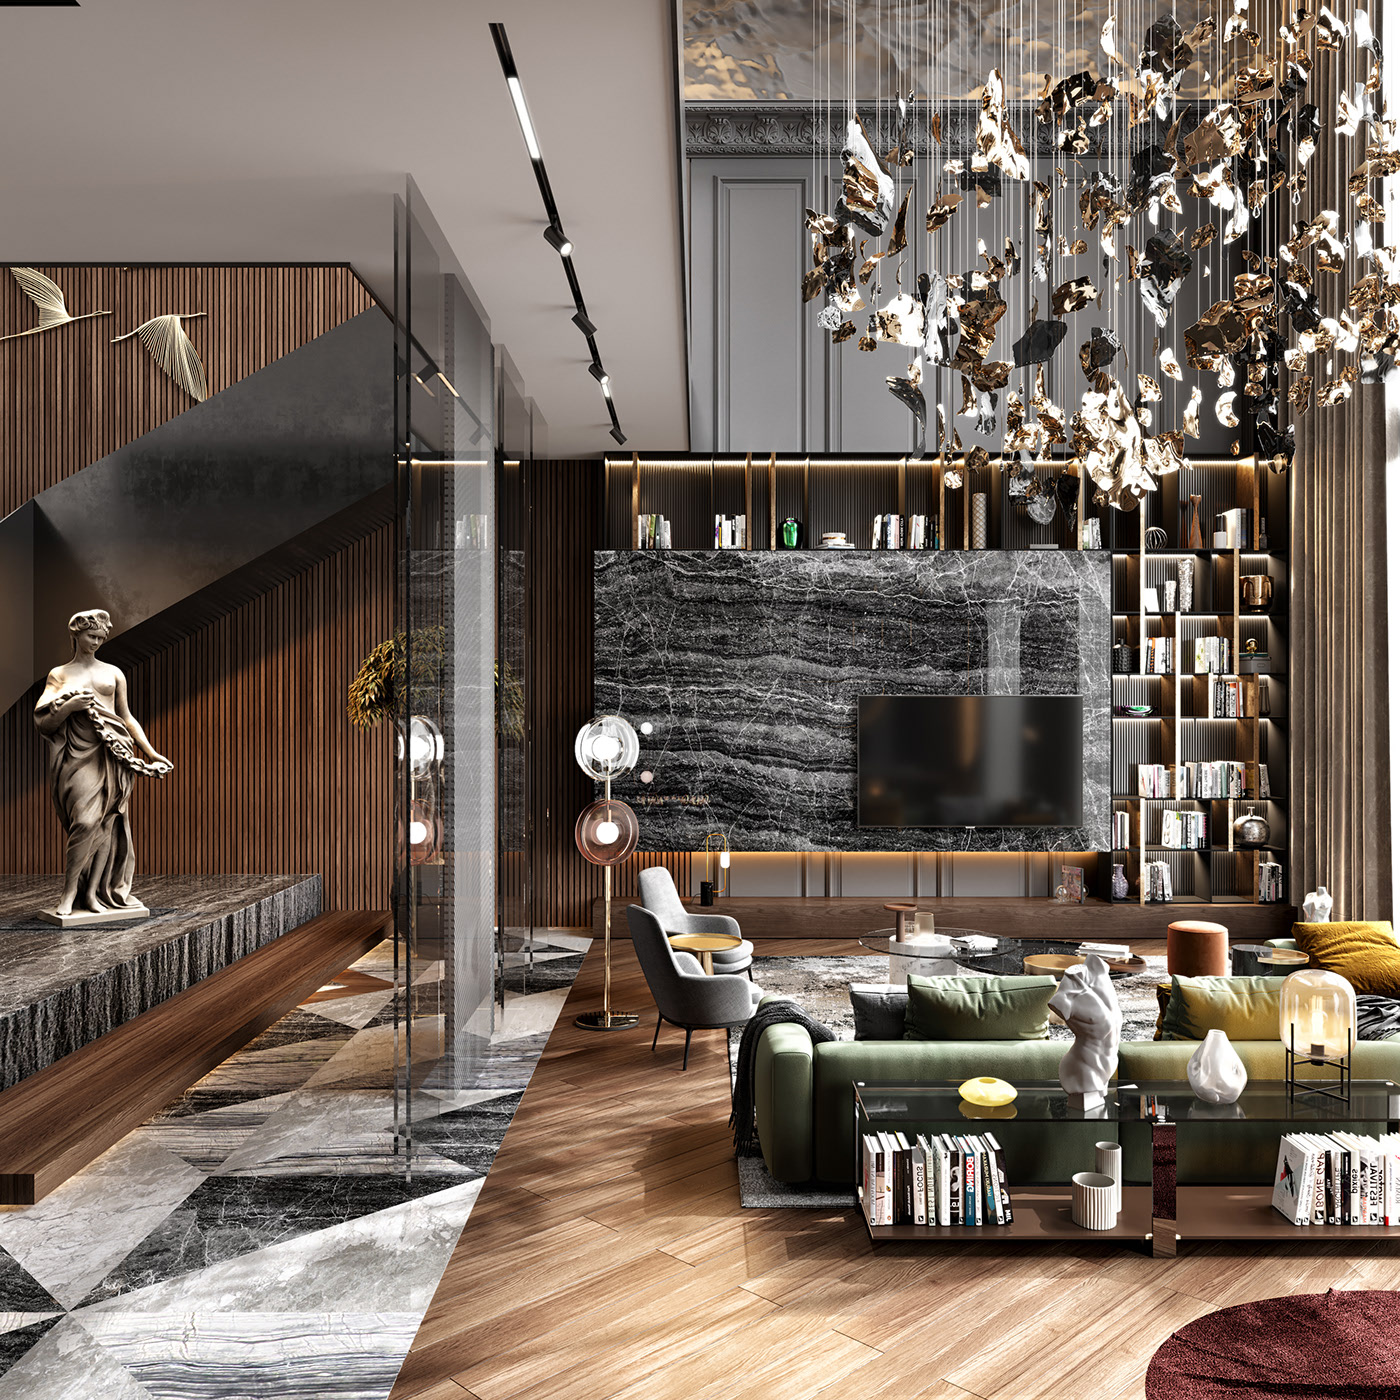 Phong cách thiết kế luxury đem đến không gian sống đẳng cấp